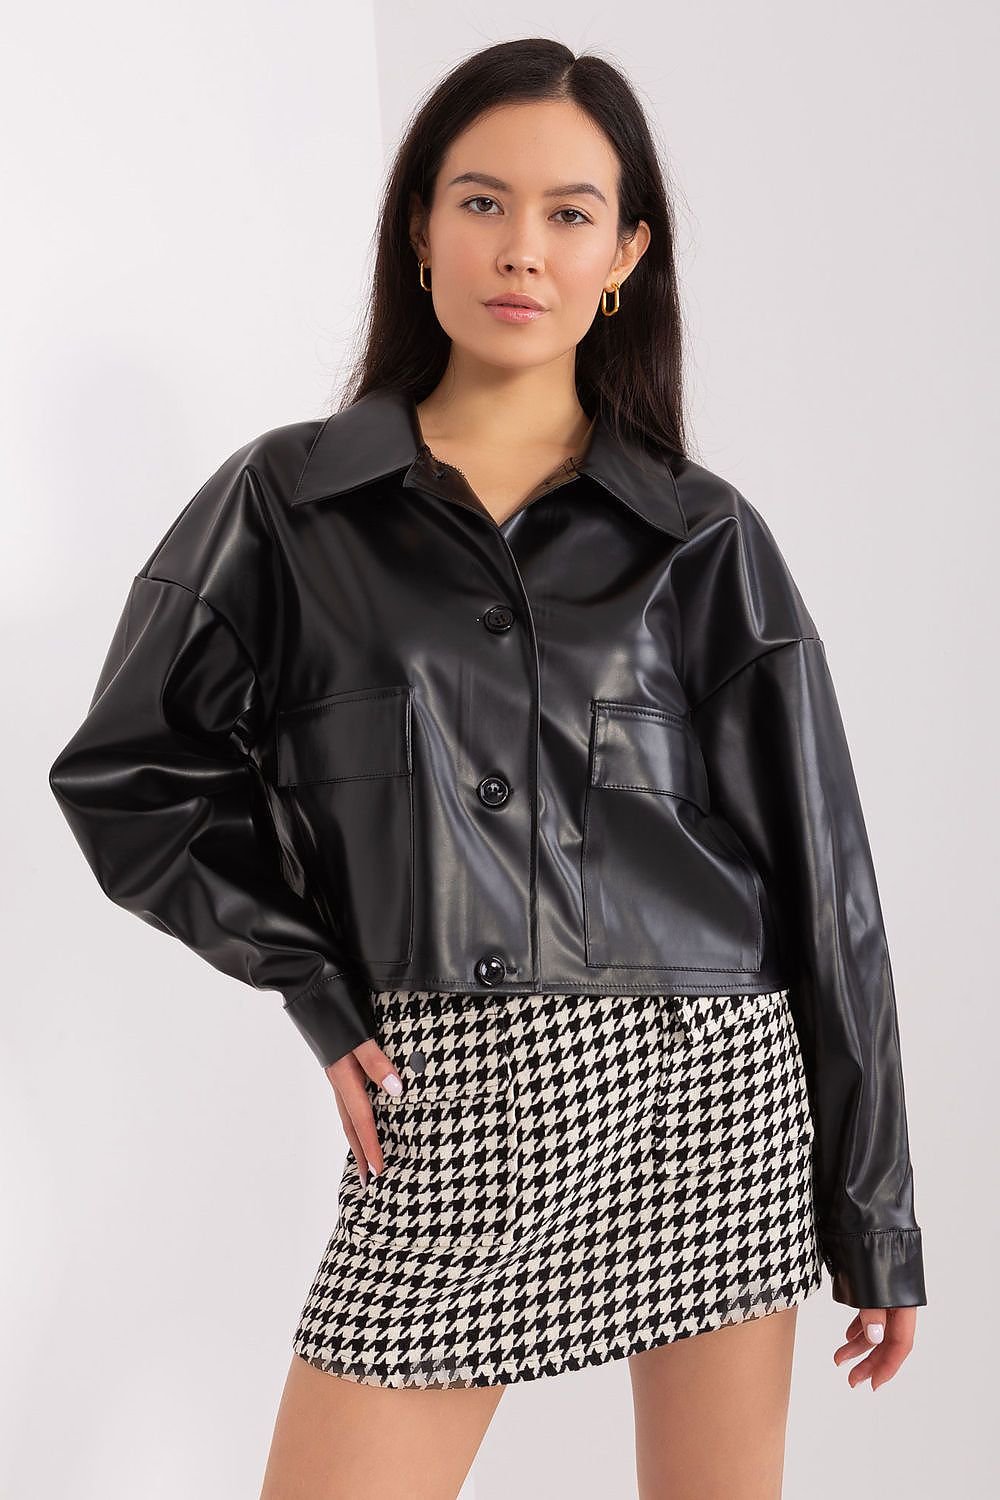 Long sleeves black eco-leather jacket